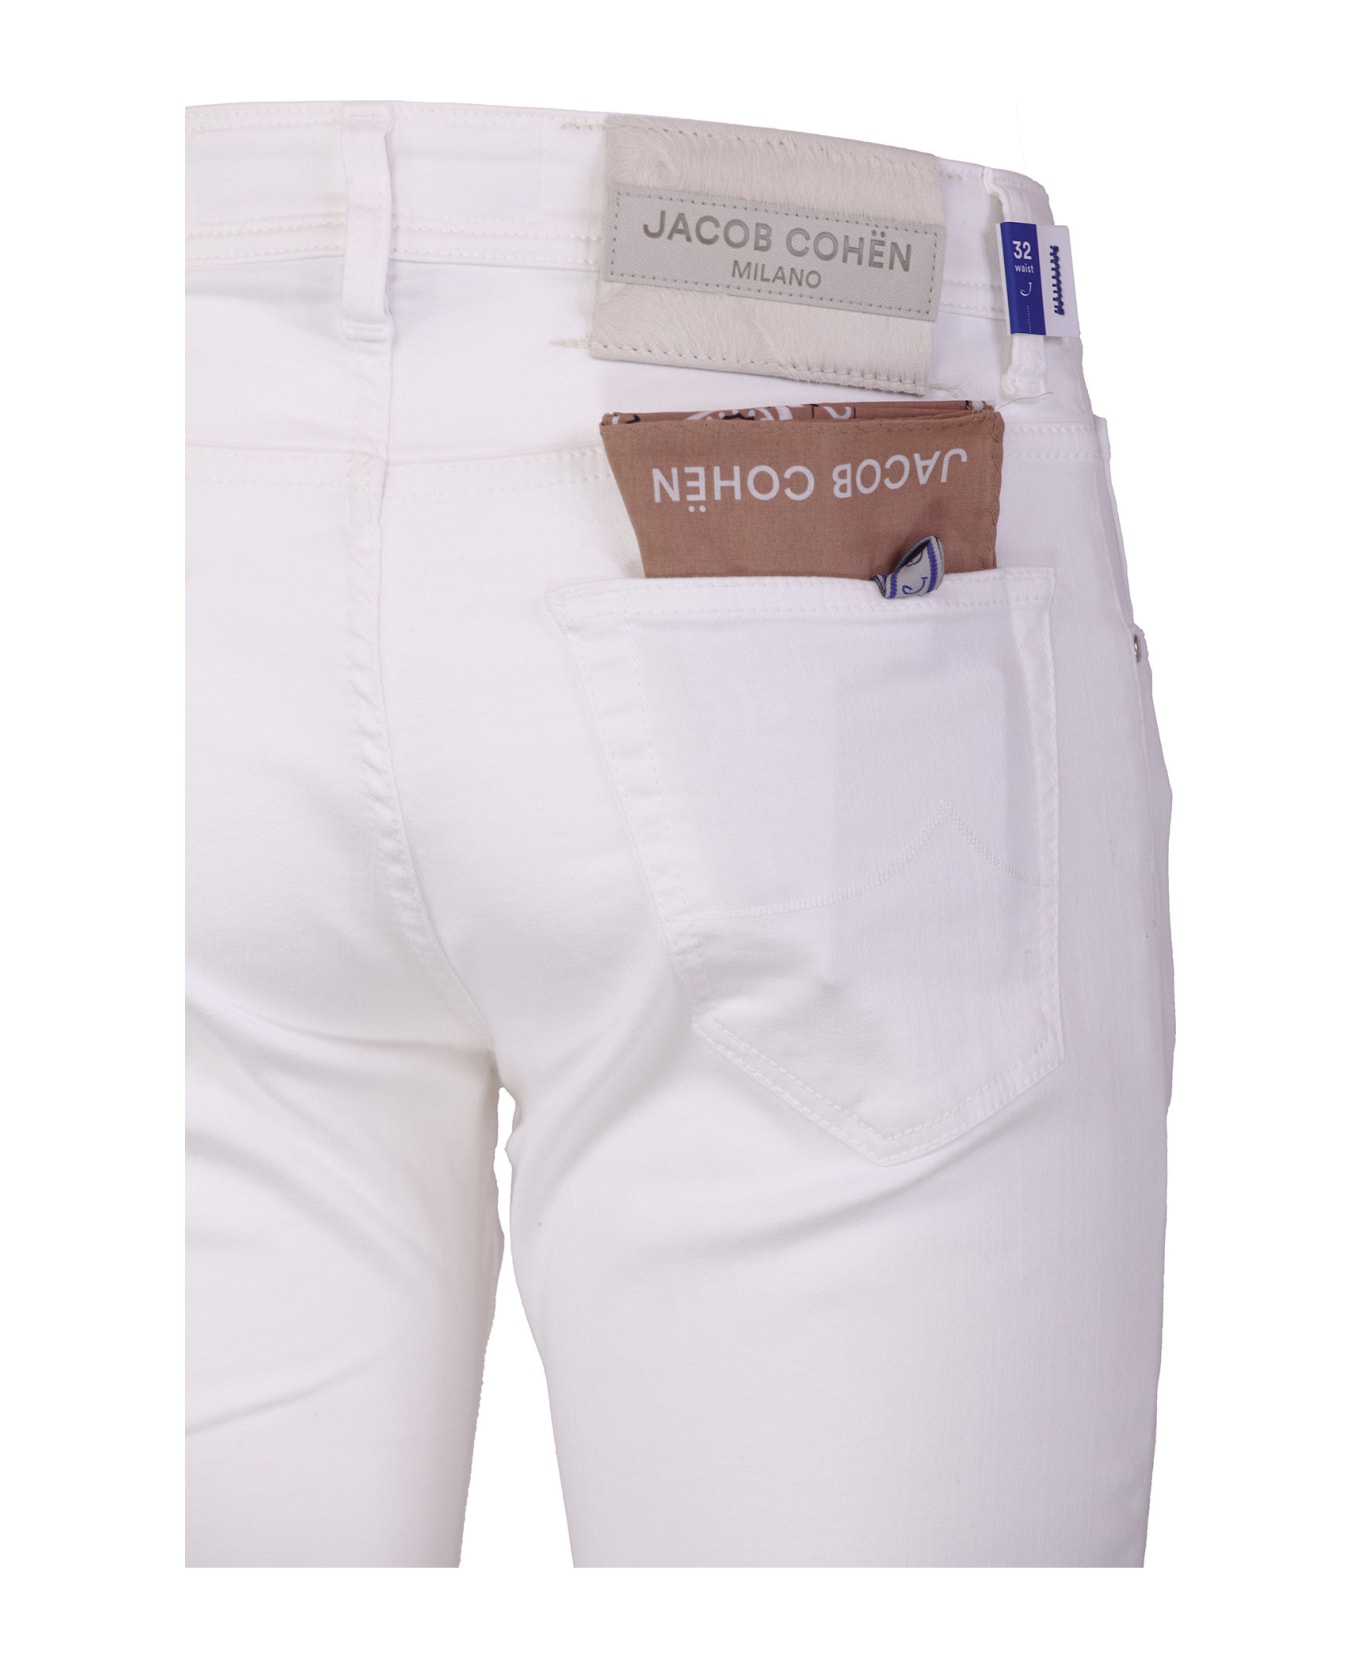 Jacob Cohen Jeans White - White